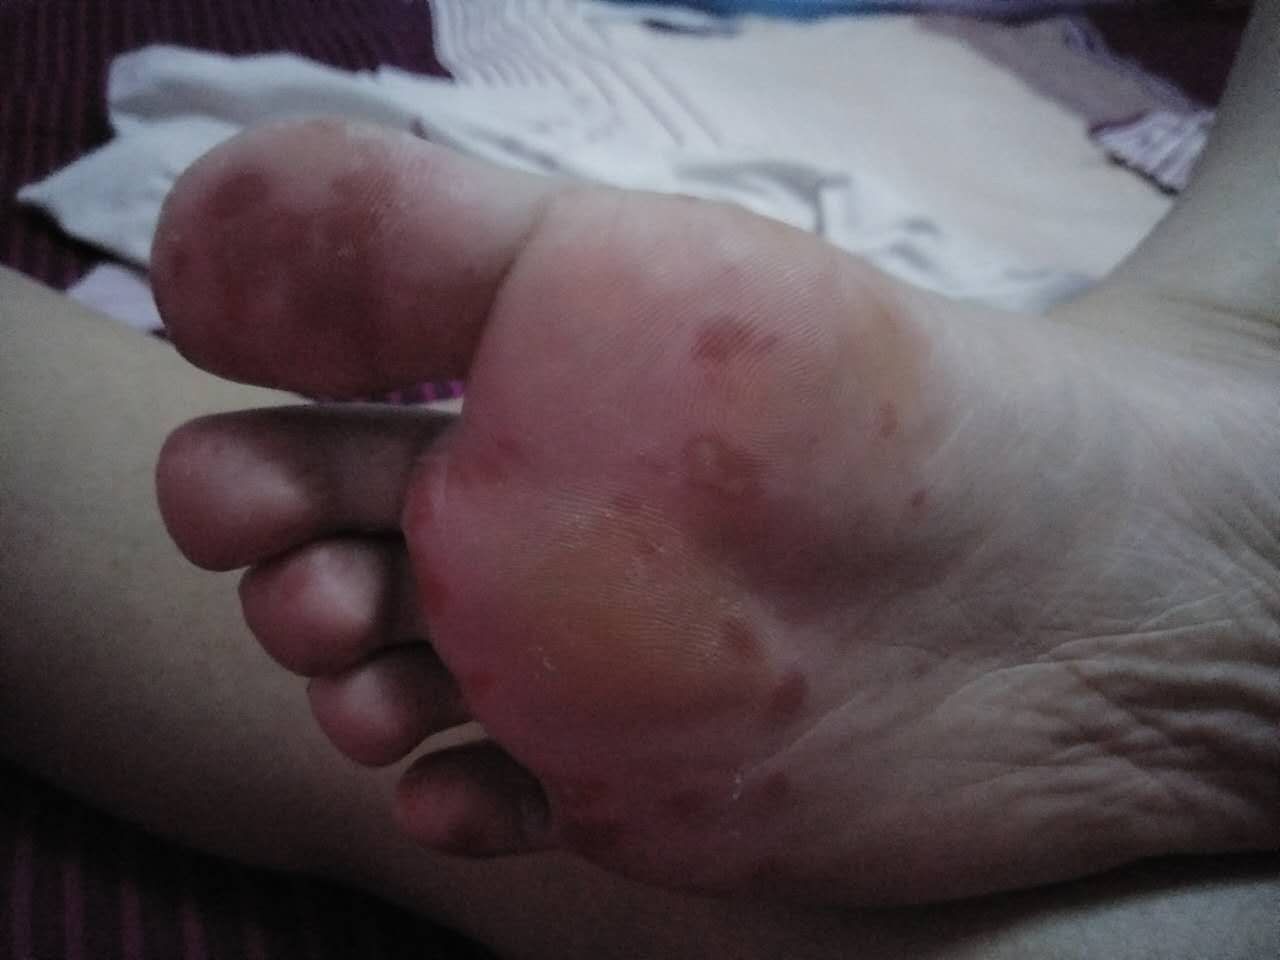 请看图片脚底不知道是脚气还是什么疼用花椒水泡了两天不